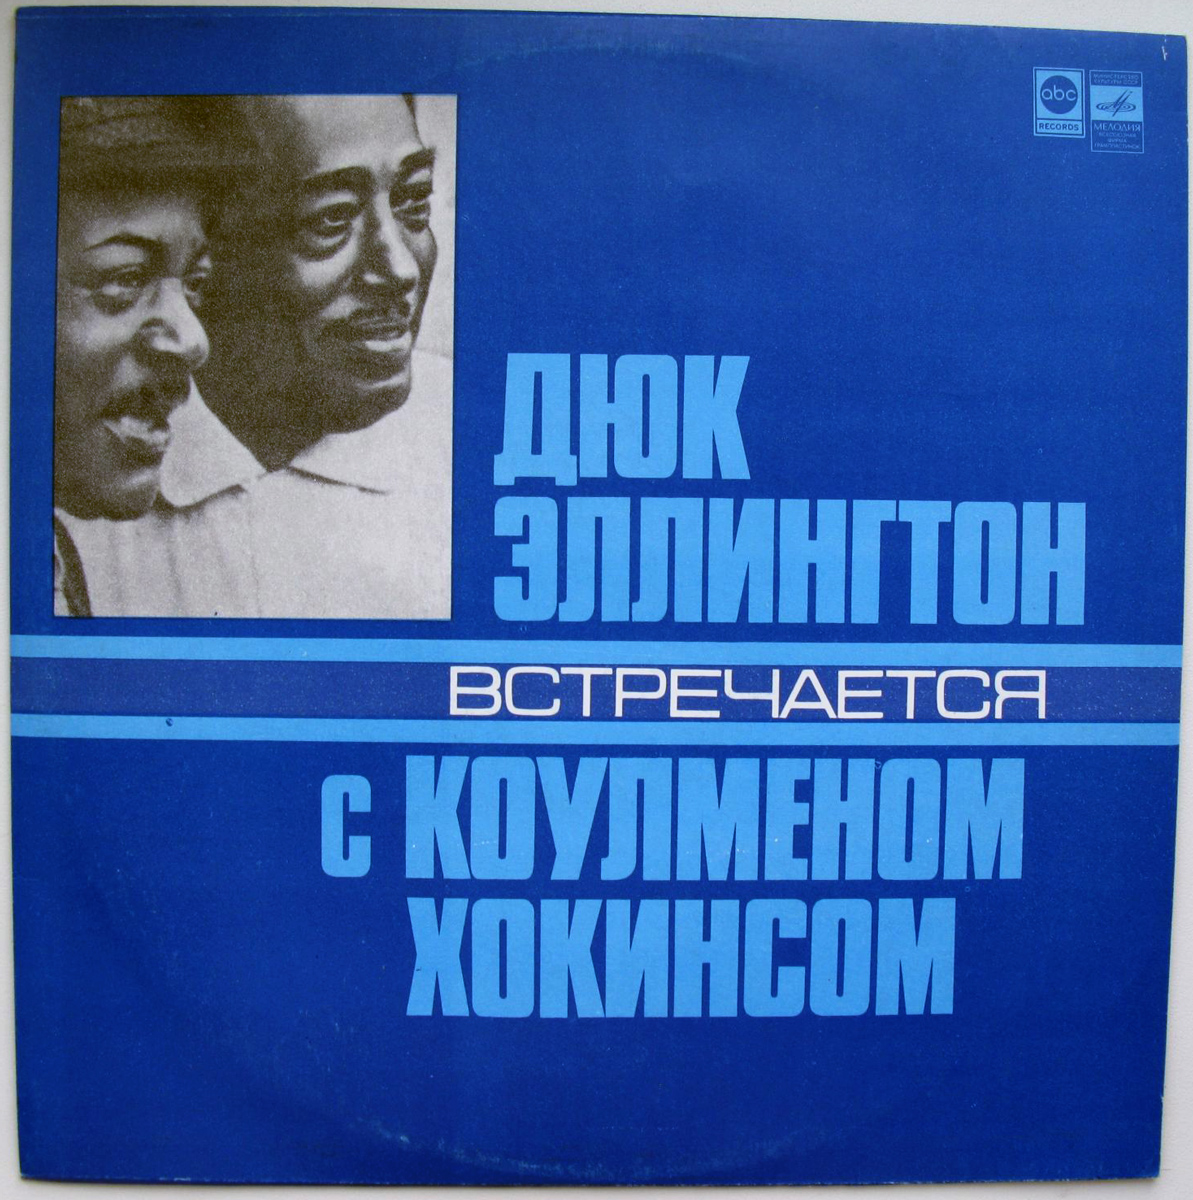 Винил в СССР: 10 самых известных пластинок фирмы «Мелодия»